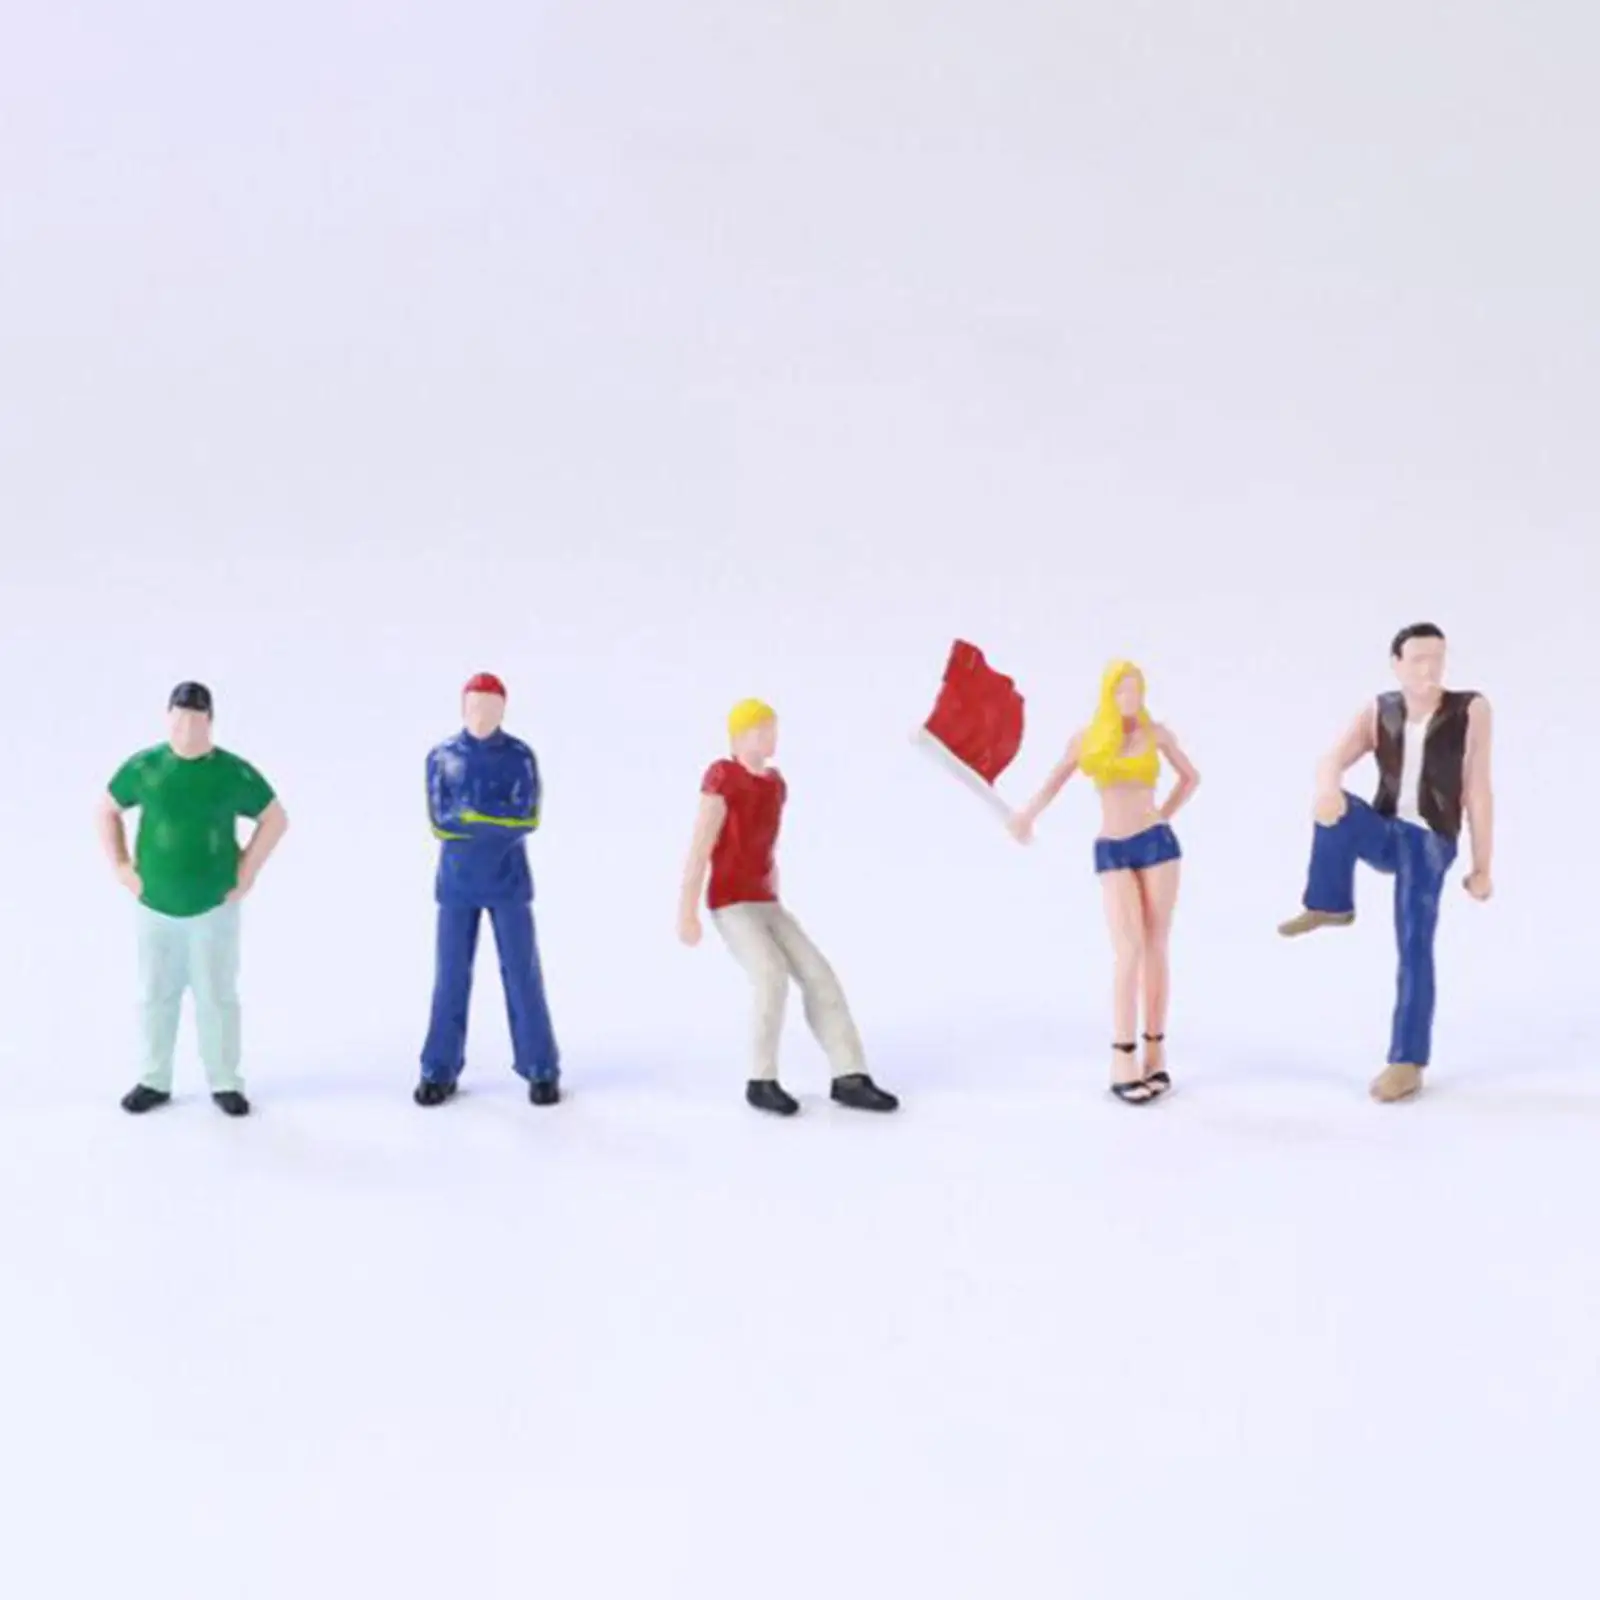 5Pcs 1:64 Model People Figures Realistic Resin Miniature Model Figures for Diorama Micro Landscape Miniature Scene Accessories